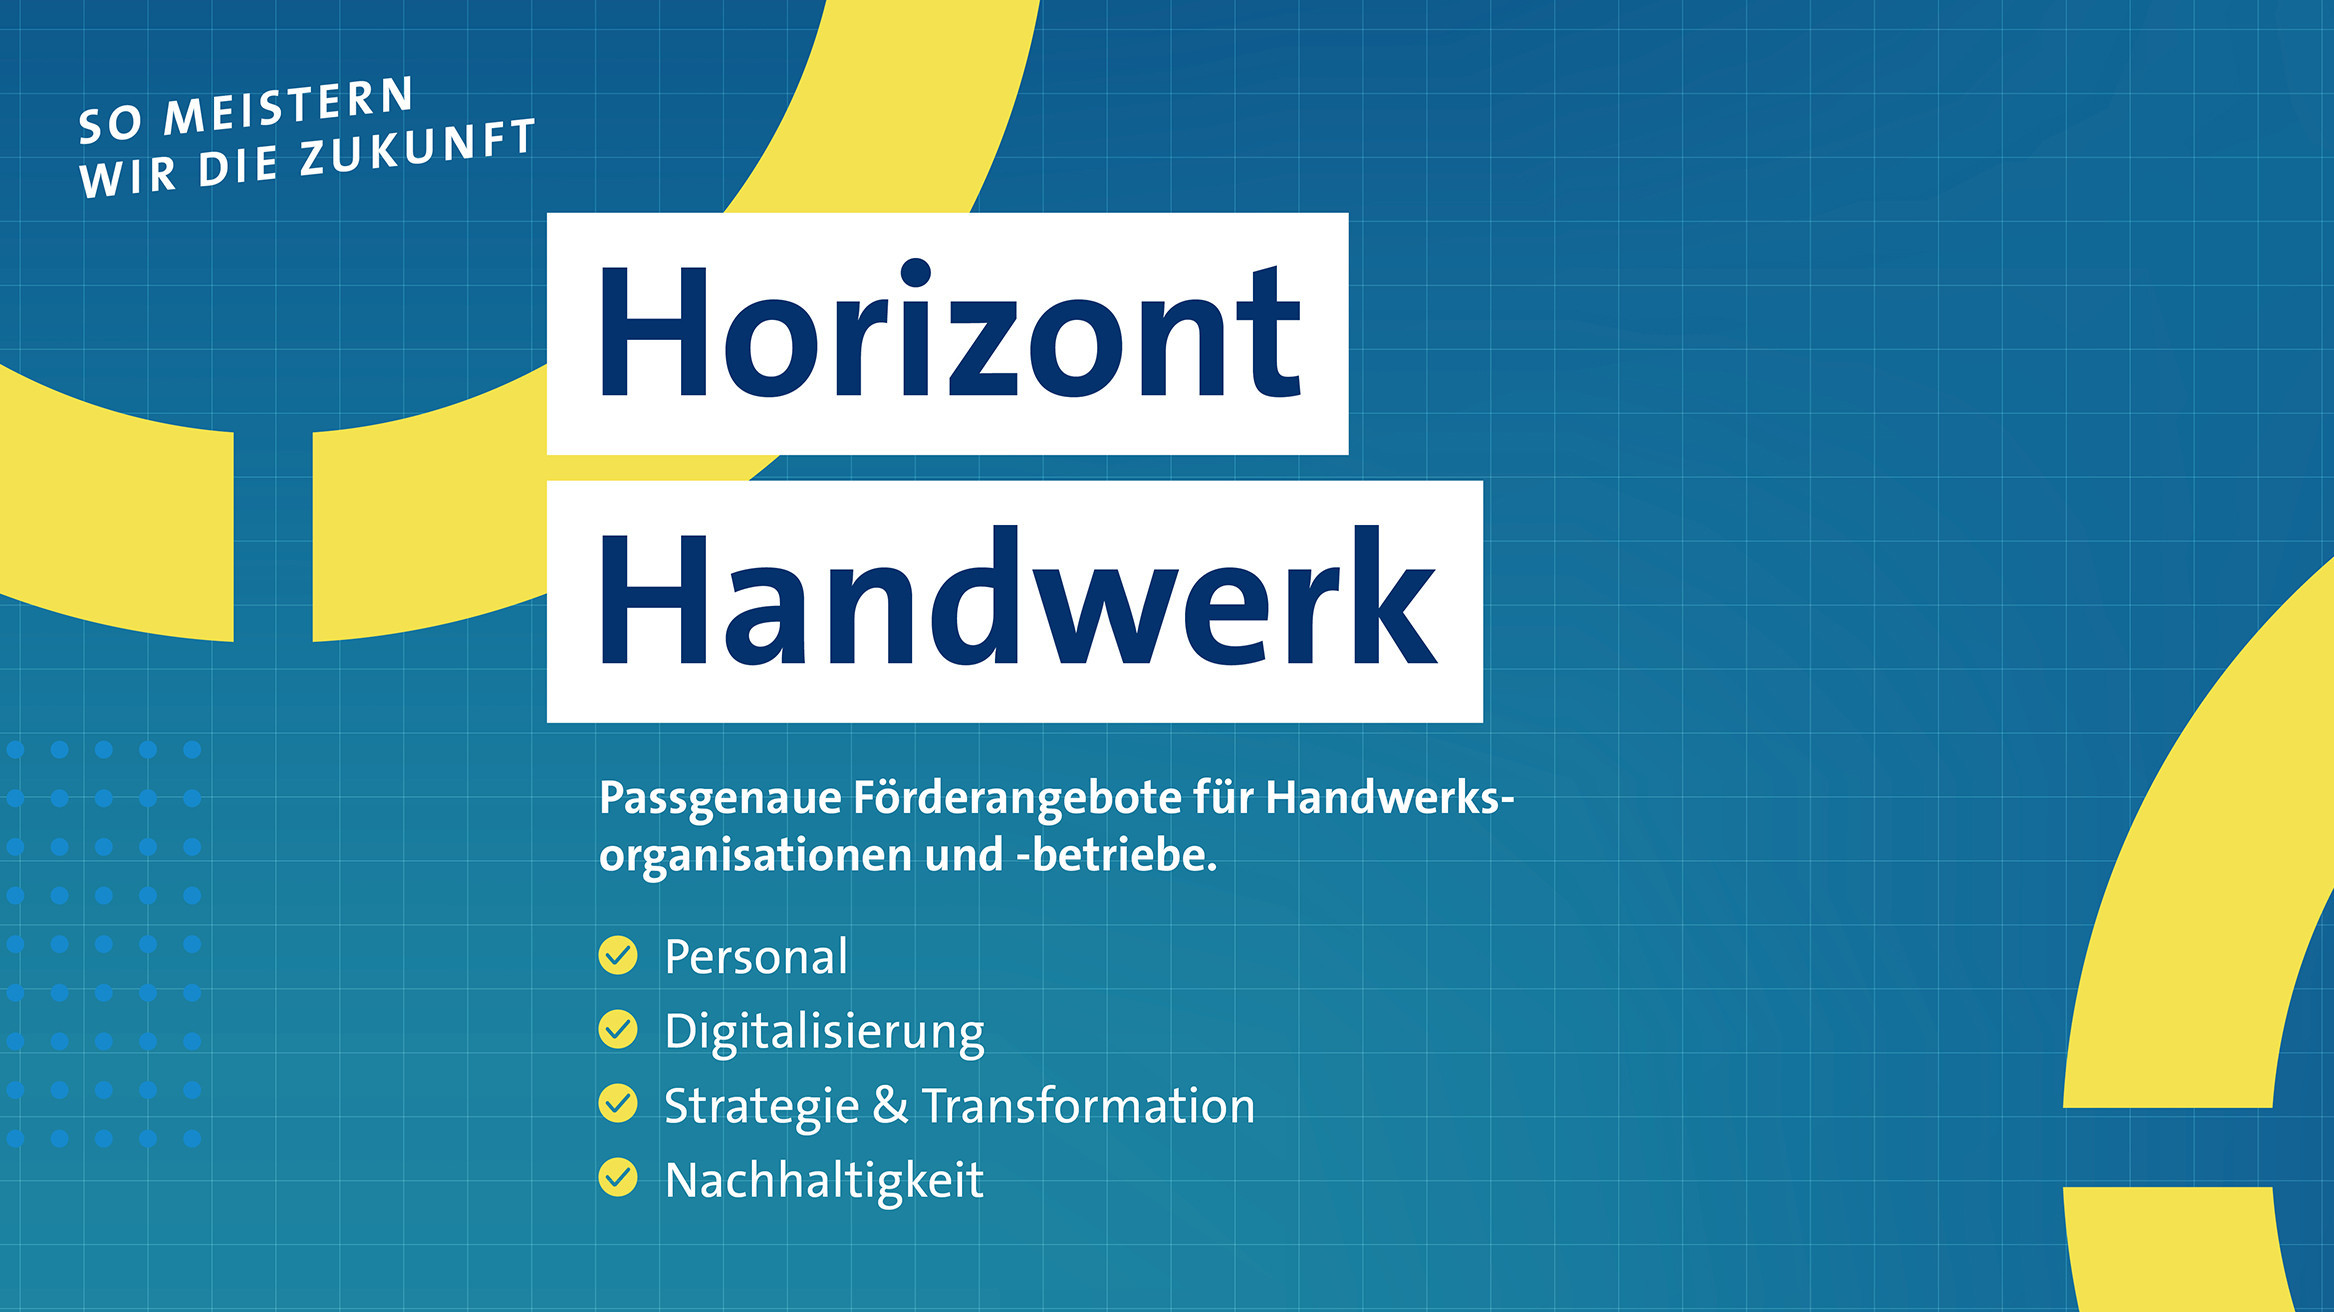 Das Logo der Initiative Horizont Handwerk 